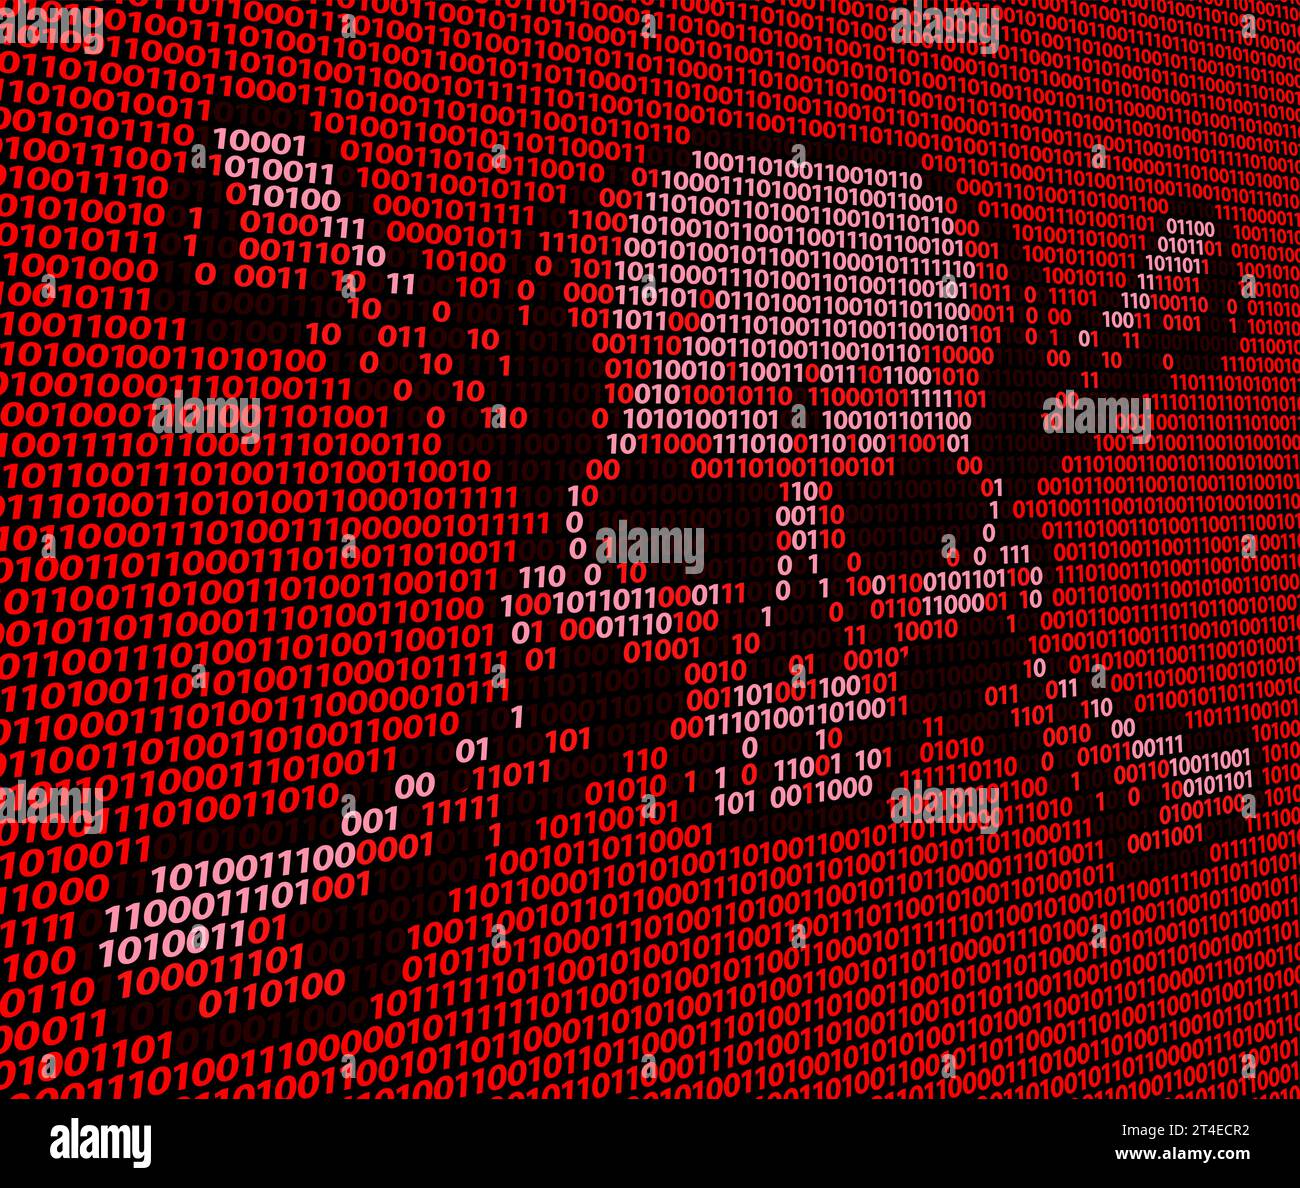 Skull computer Cyber Attack hacker virus Concept Illustrazione Vettoriale